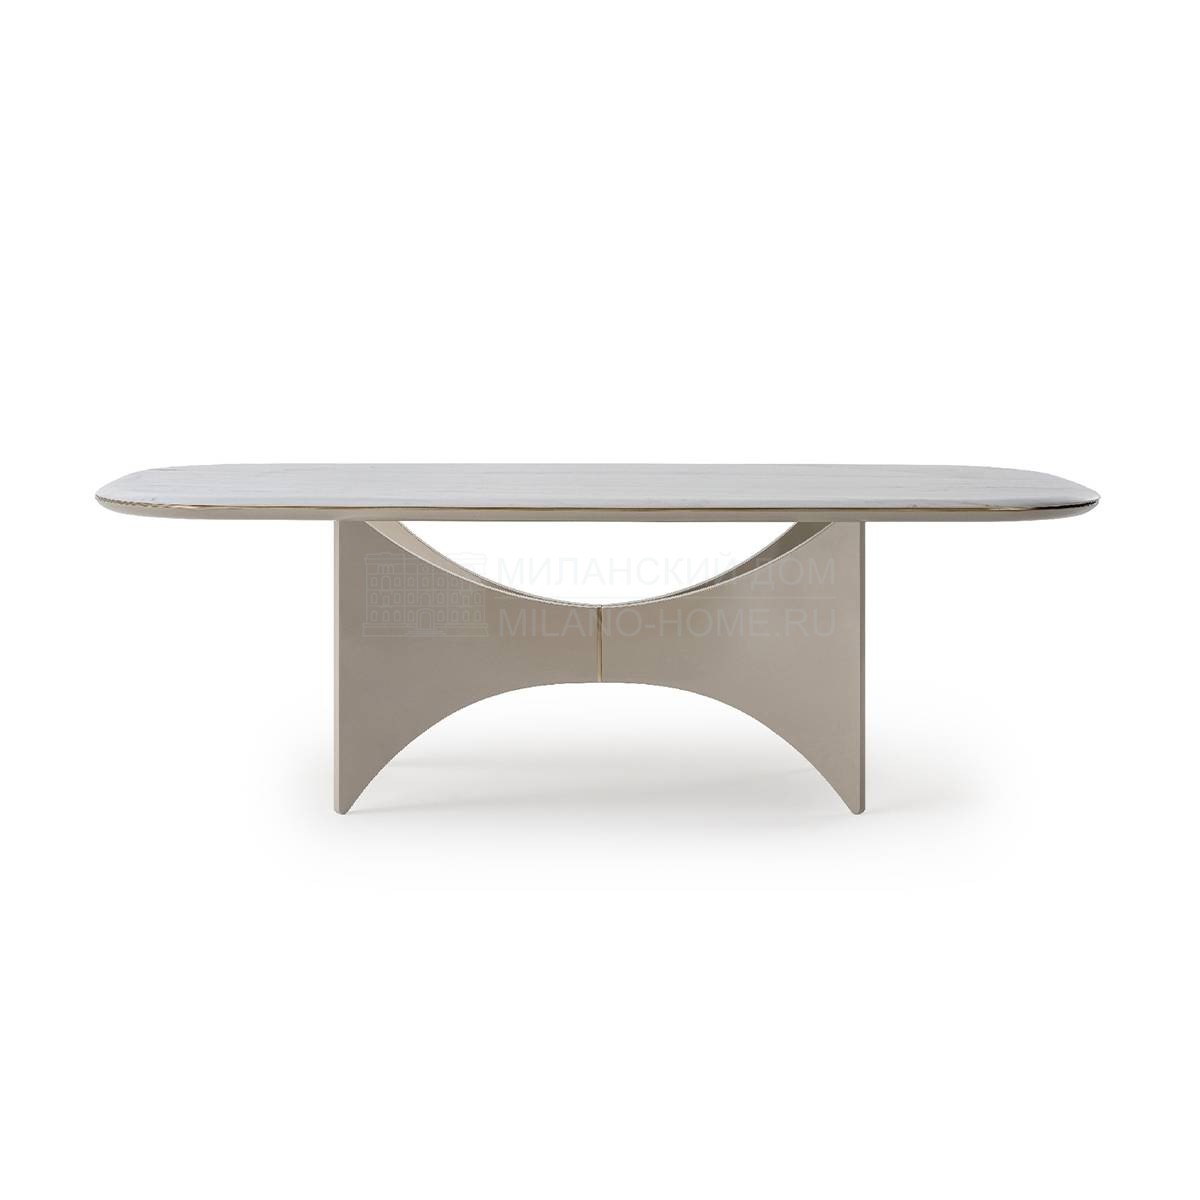 Обеденный стол Blues rectangular table из Италии фабрики TURRI